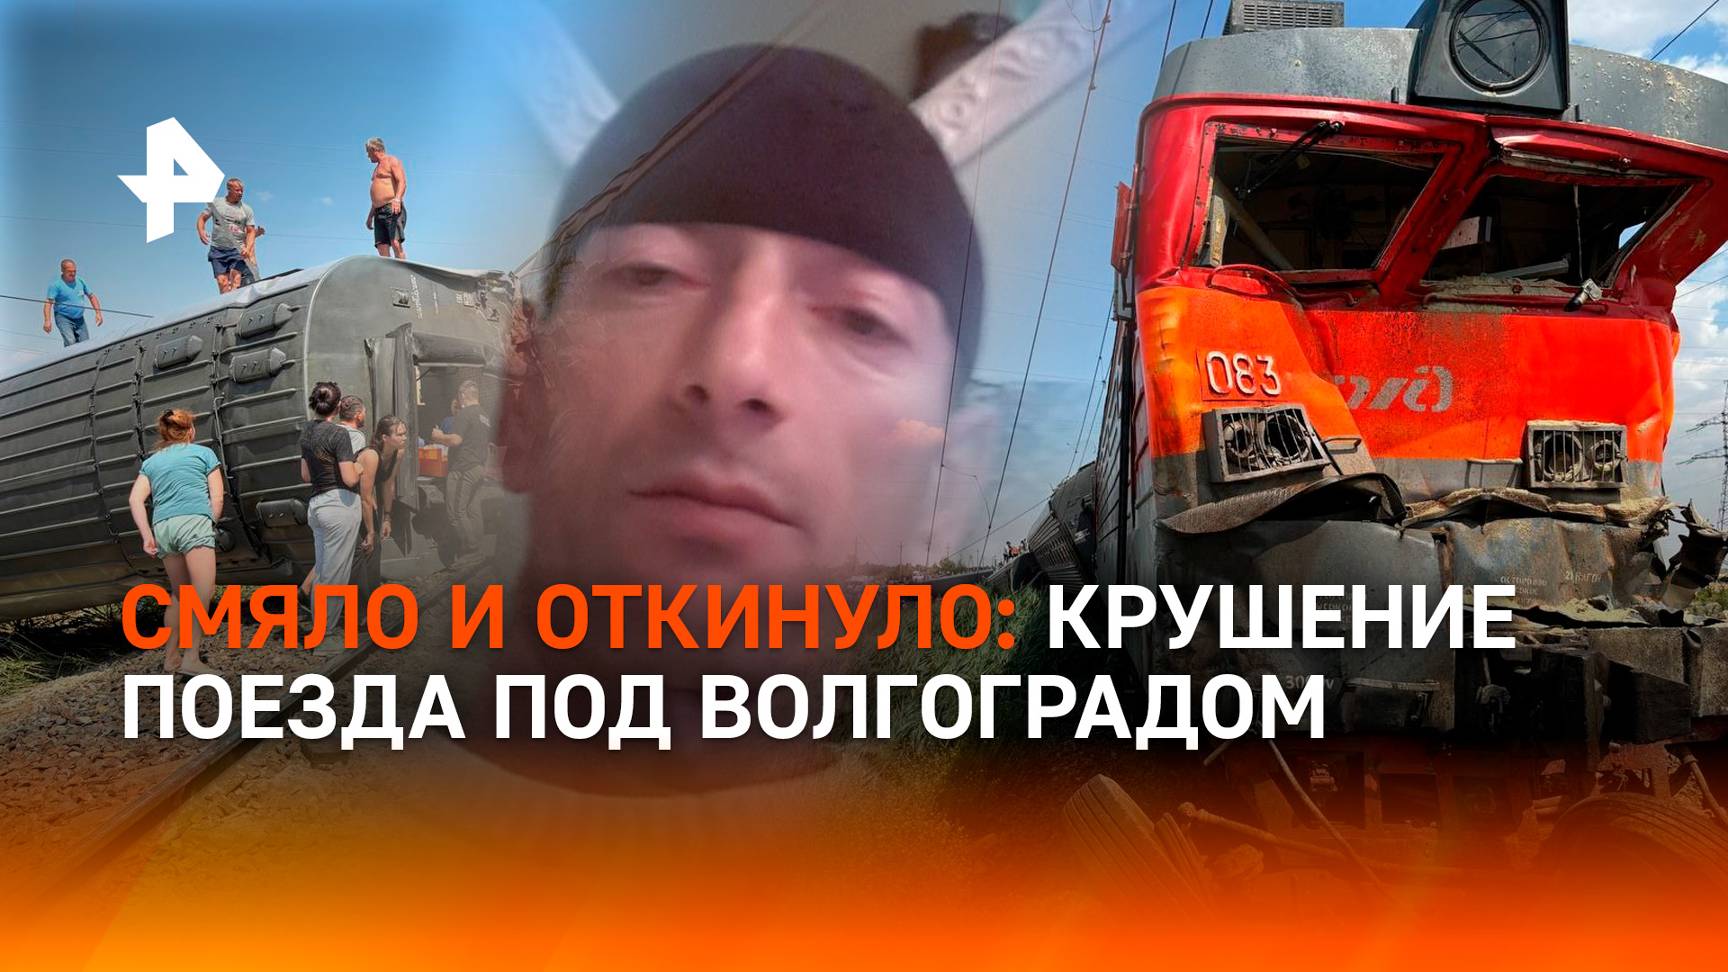 Лихой камазист "перевернул" поезд: столкновение пассажирского состава с грузовиком под Волгоградом